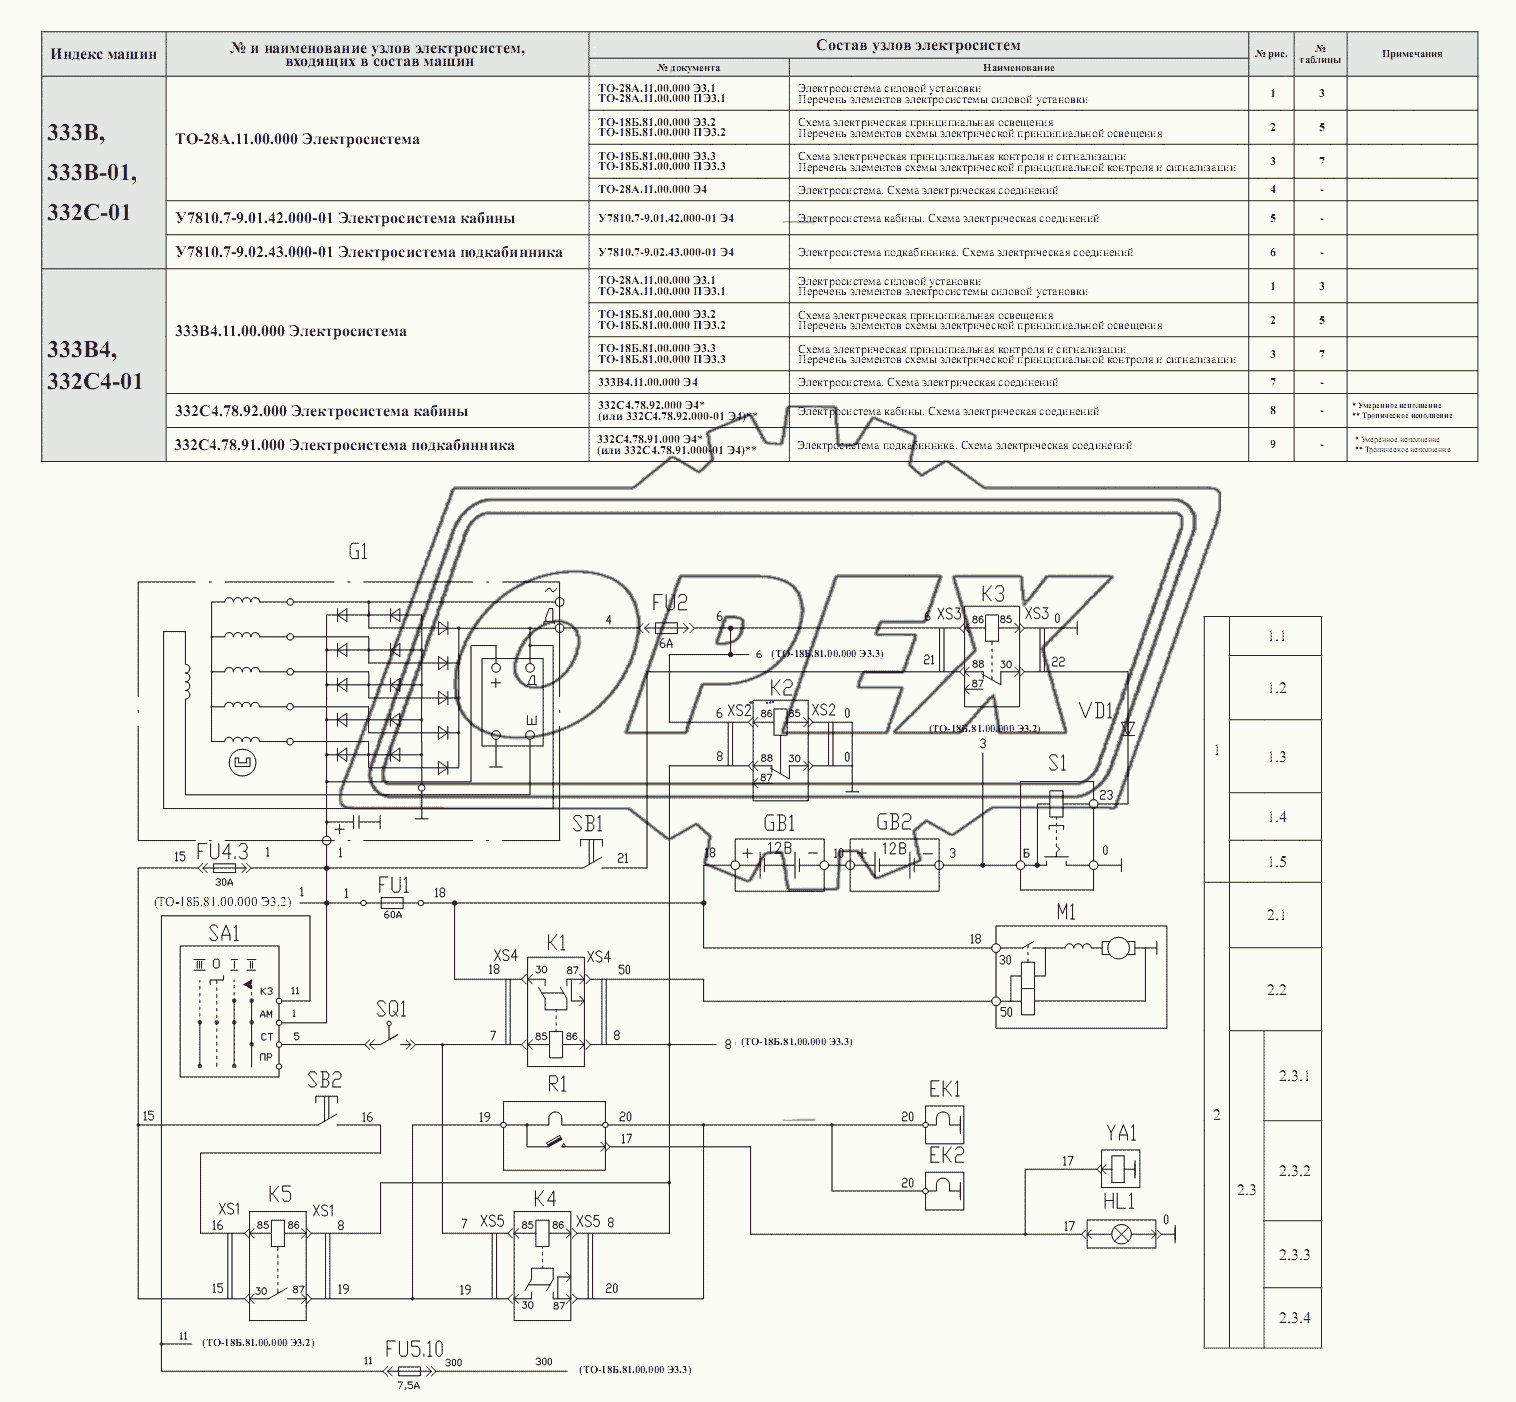 Схема электрическая принципиальная силовой установки Э3.1 ТО-28А.11.00.000 Э3.1